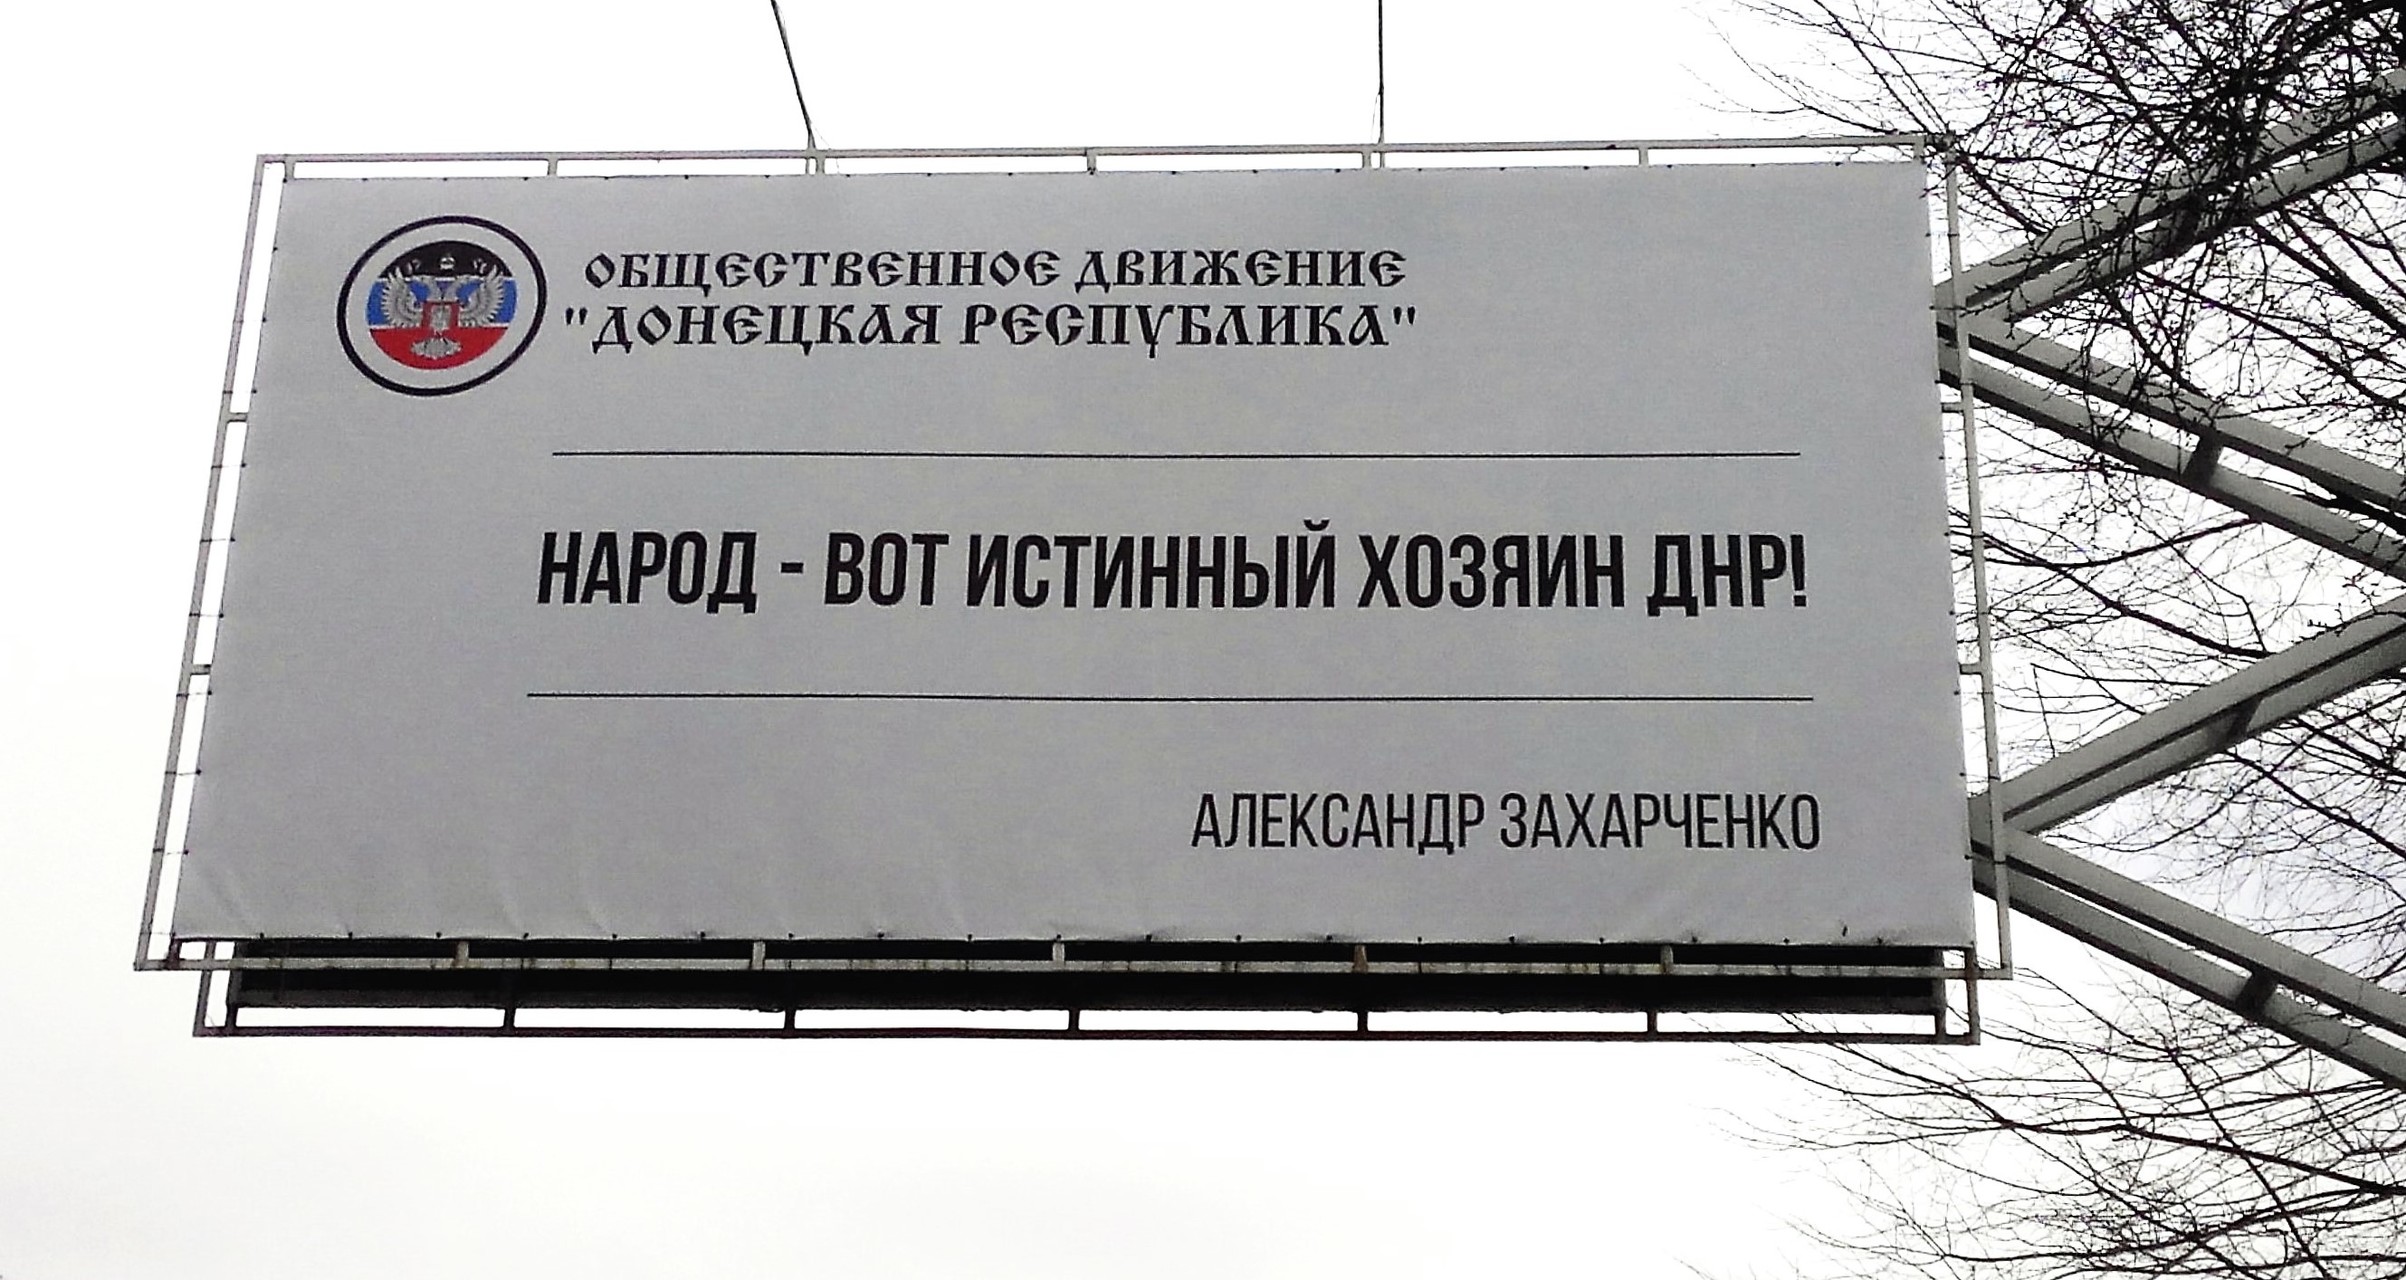 Терористи "ДНР" "обіцяють" мешканцям, що "все тільки починається" - фото 4